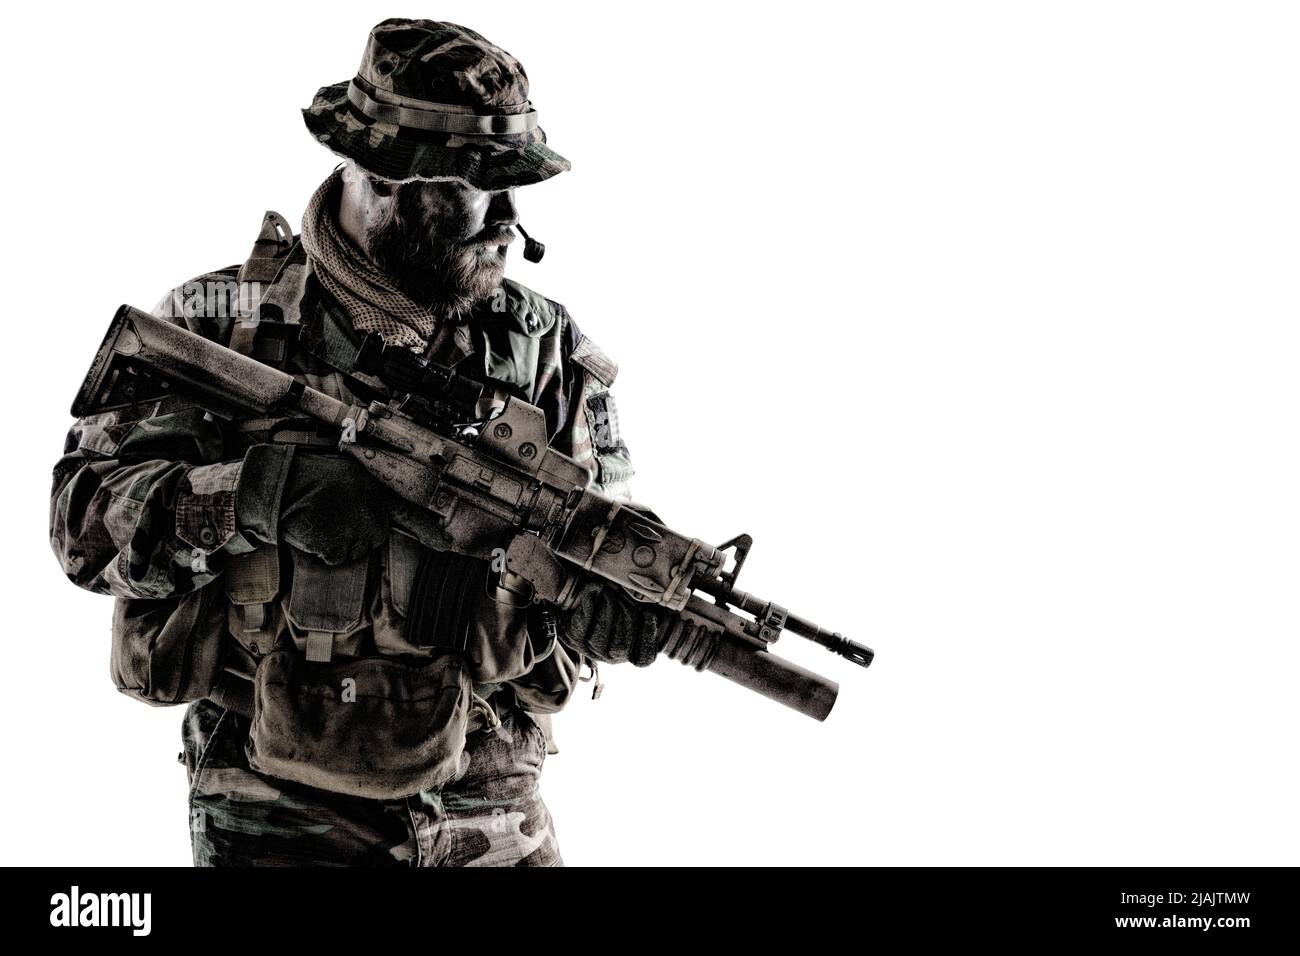 Commando soldat en uniforme de camouflage et chapeau de boonie, armé d'une carabine de service, tir en studio sur fond blanc. Banque D'Images